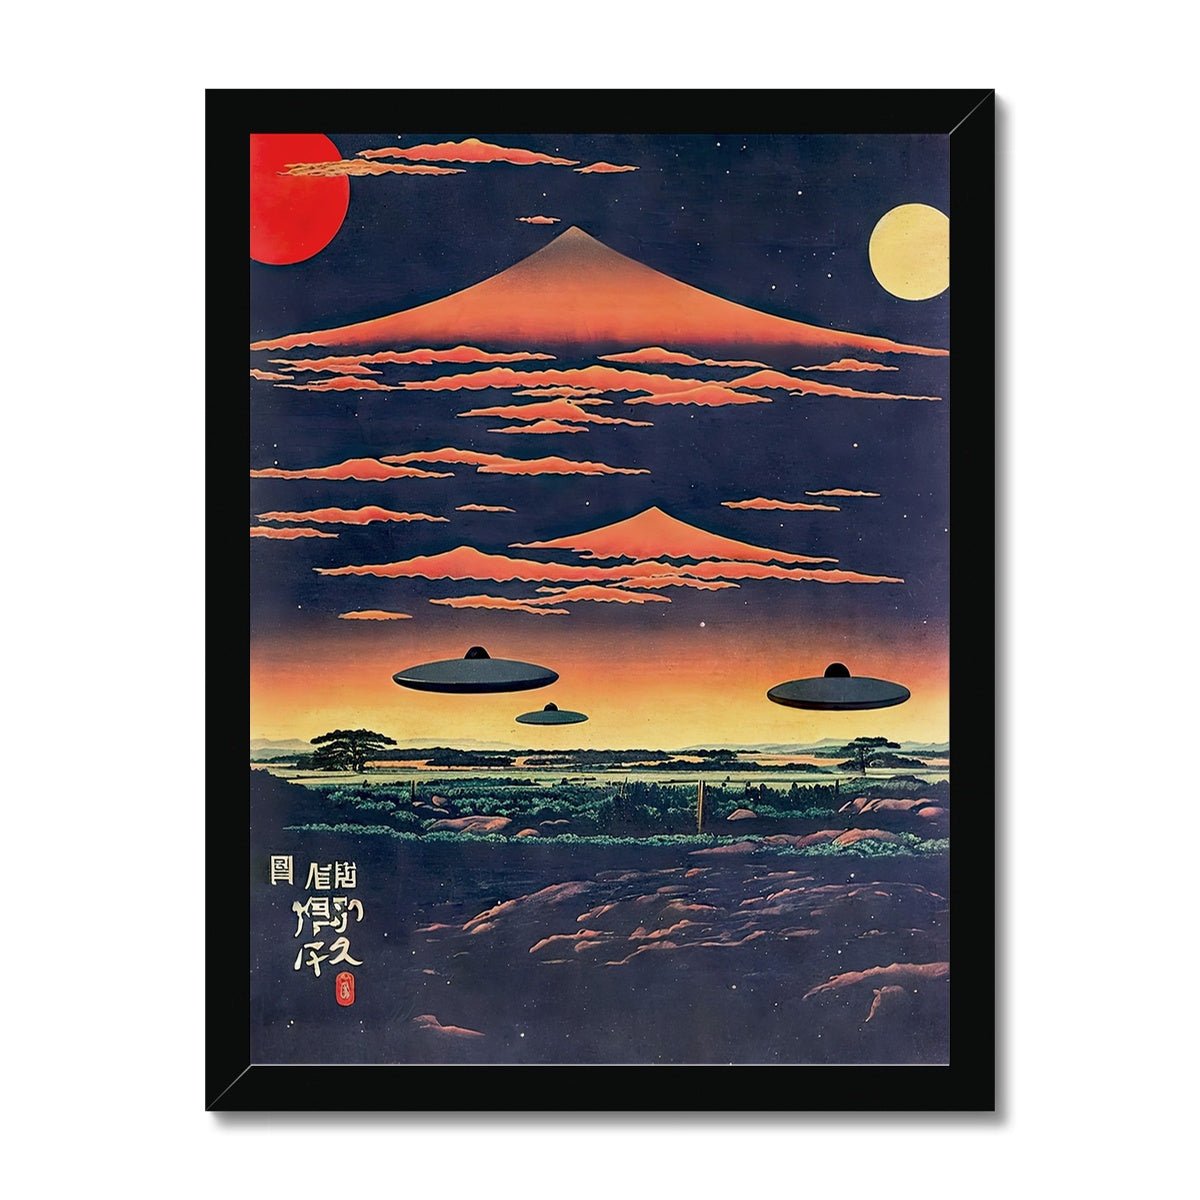 Fine art 6"x8" / Black Frame Extraterrestrial Japanese Art | UFO Space ET Aliens, 宇宙人 Japanese Surrealism, Original Vintage Fantasy Framed Art Print